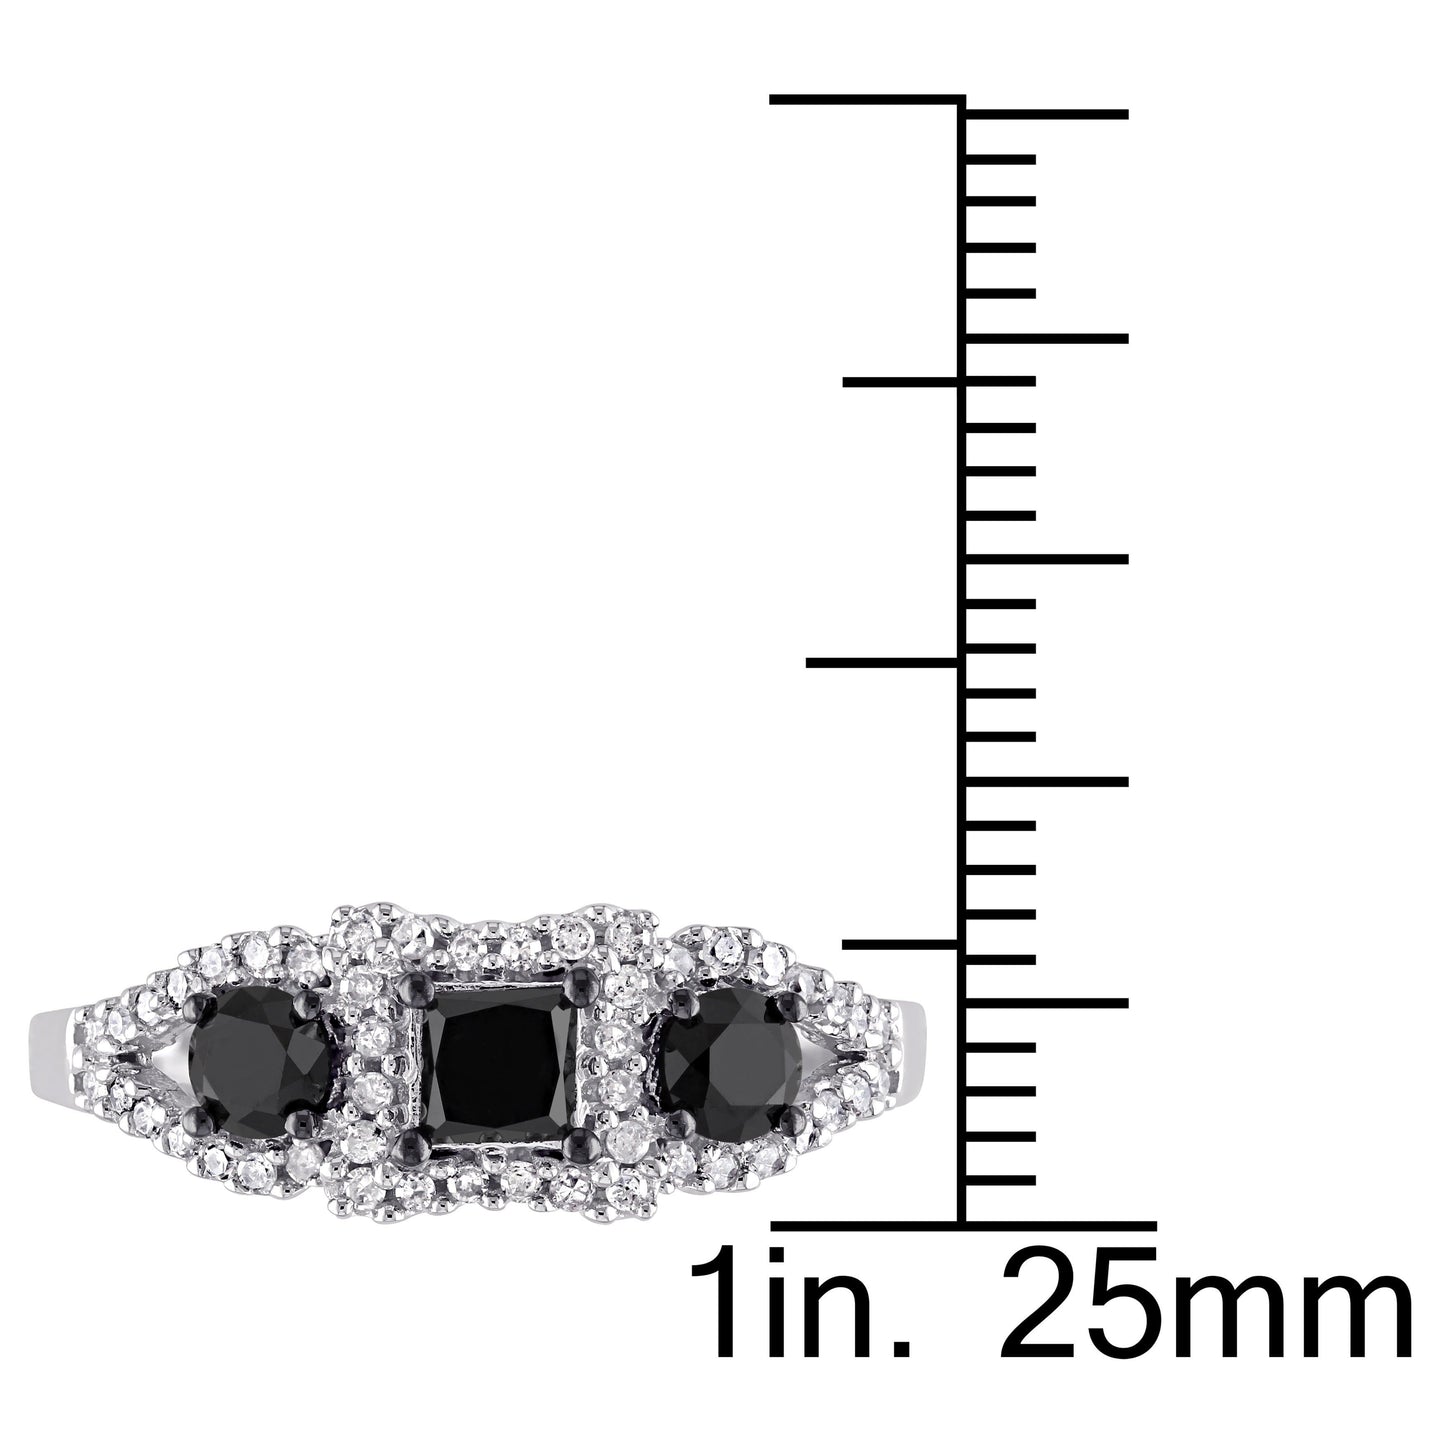 Sophia B 3-Stone Black & White Diamond Ring in 10k White Gold